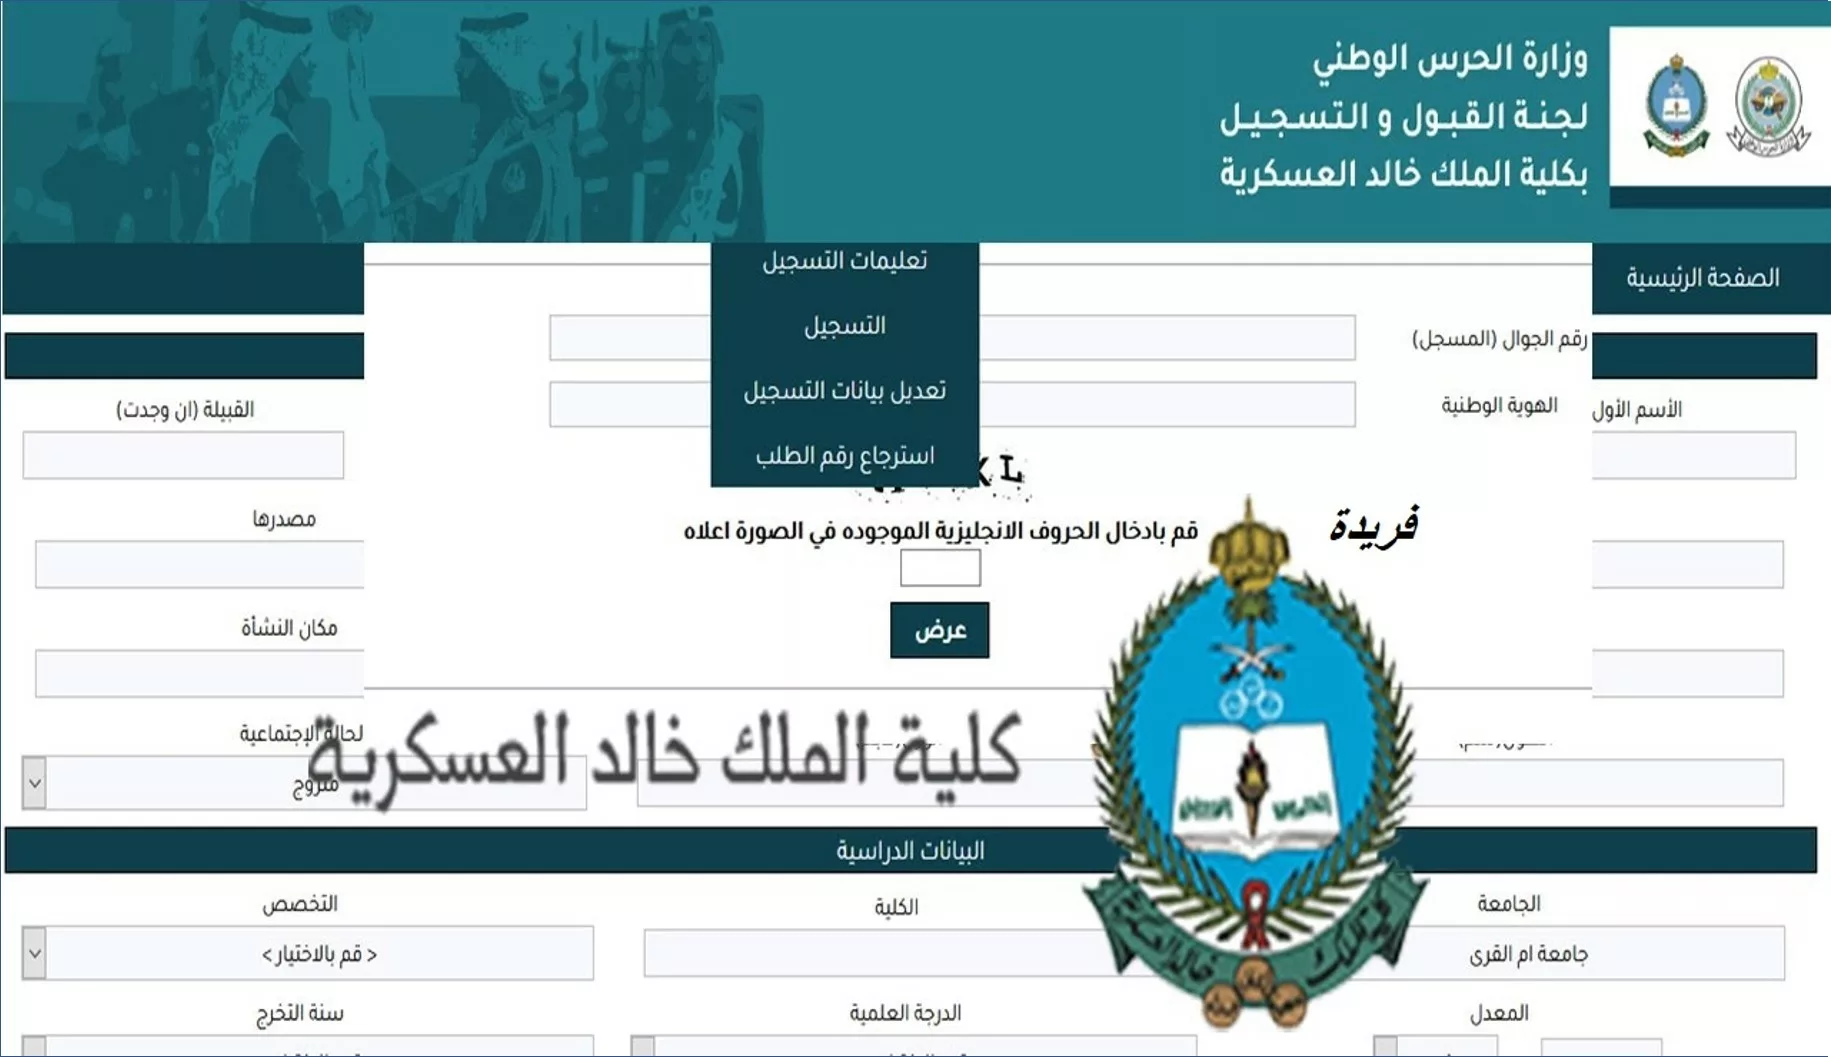 كلية الملك خالد العسكرية jpg - مدونة التقنية العربية